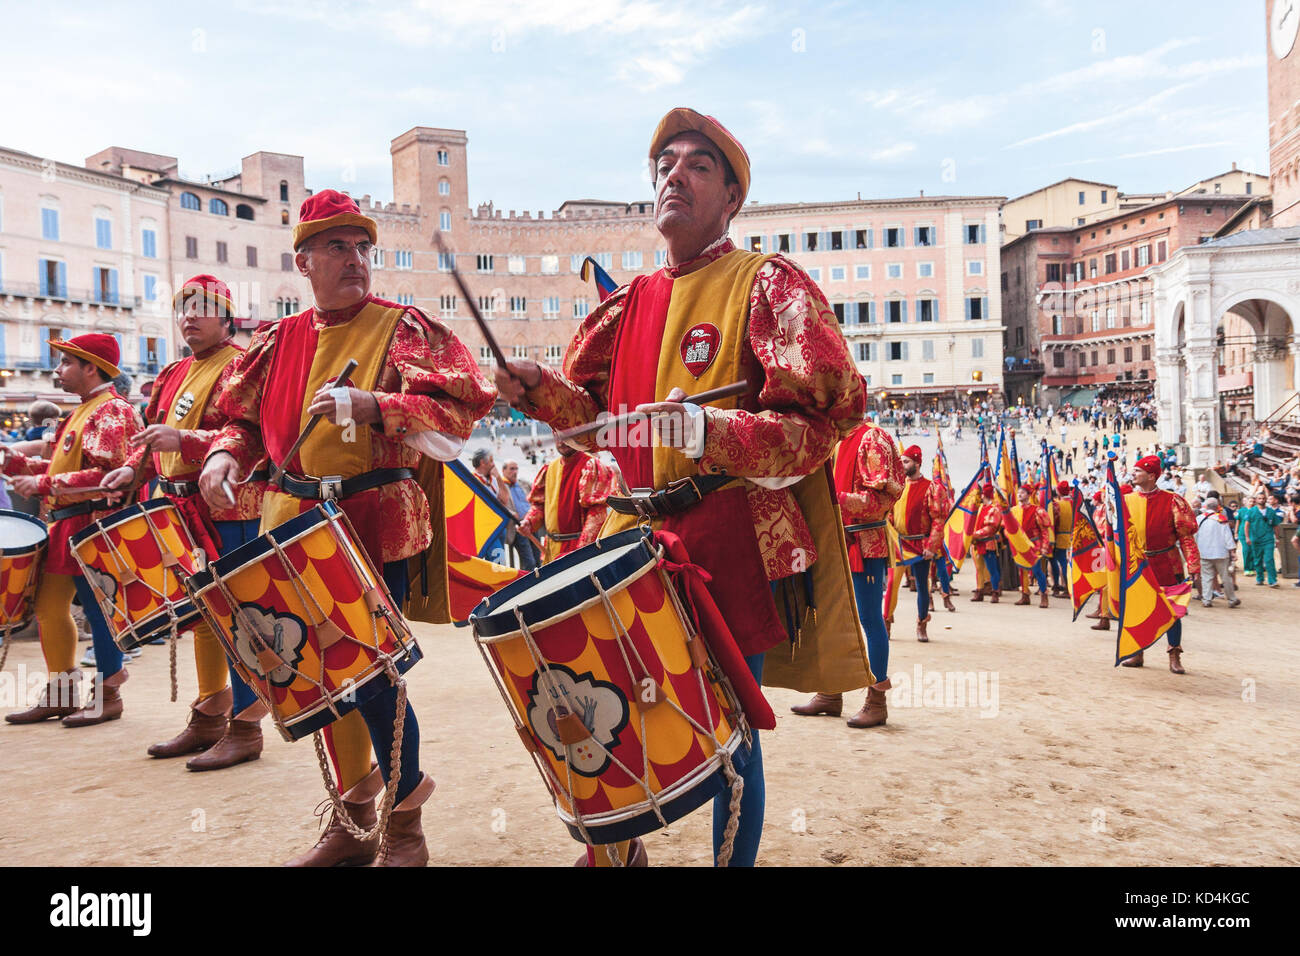 Les hommes avec des musiciens de la batterie dans des costumes colorés historiques célébrant à traditionnel palio course de chevaux à Sienne, il parade Banque D'Images